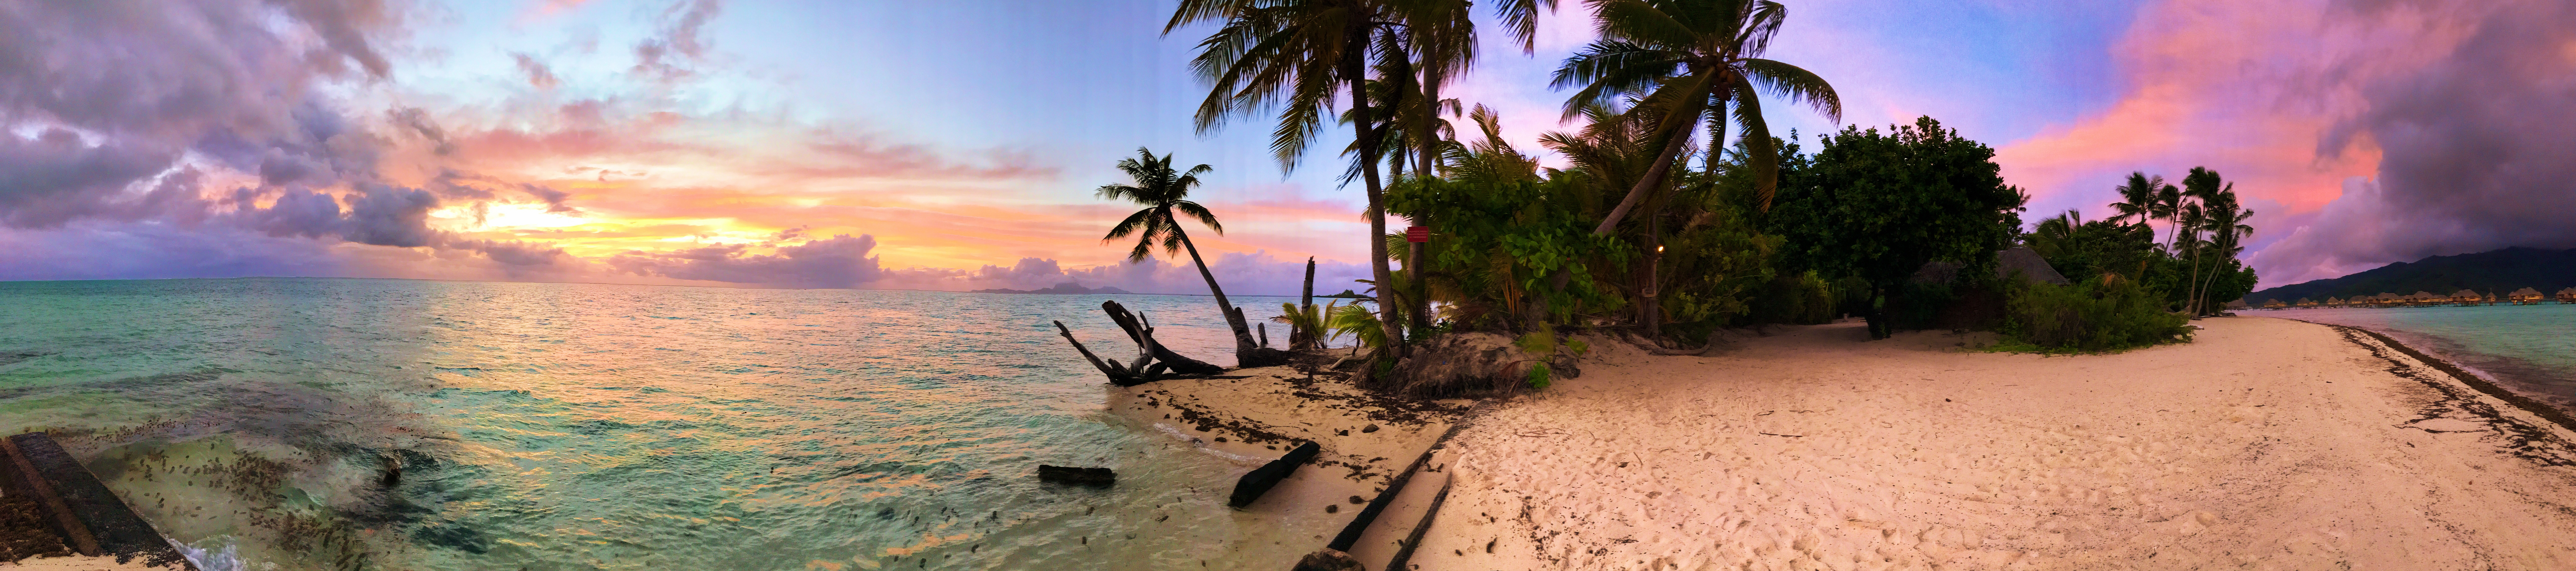 25 Photos To Inspire You To Visit French Polynesia - Tahiti Travel Photos - Communikait by Kait Hanson